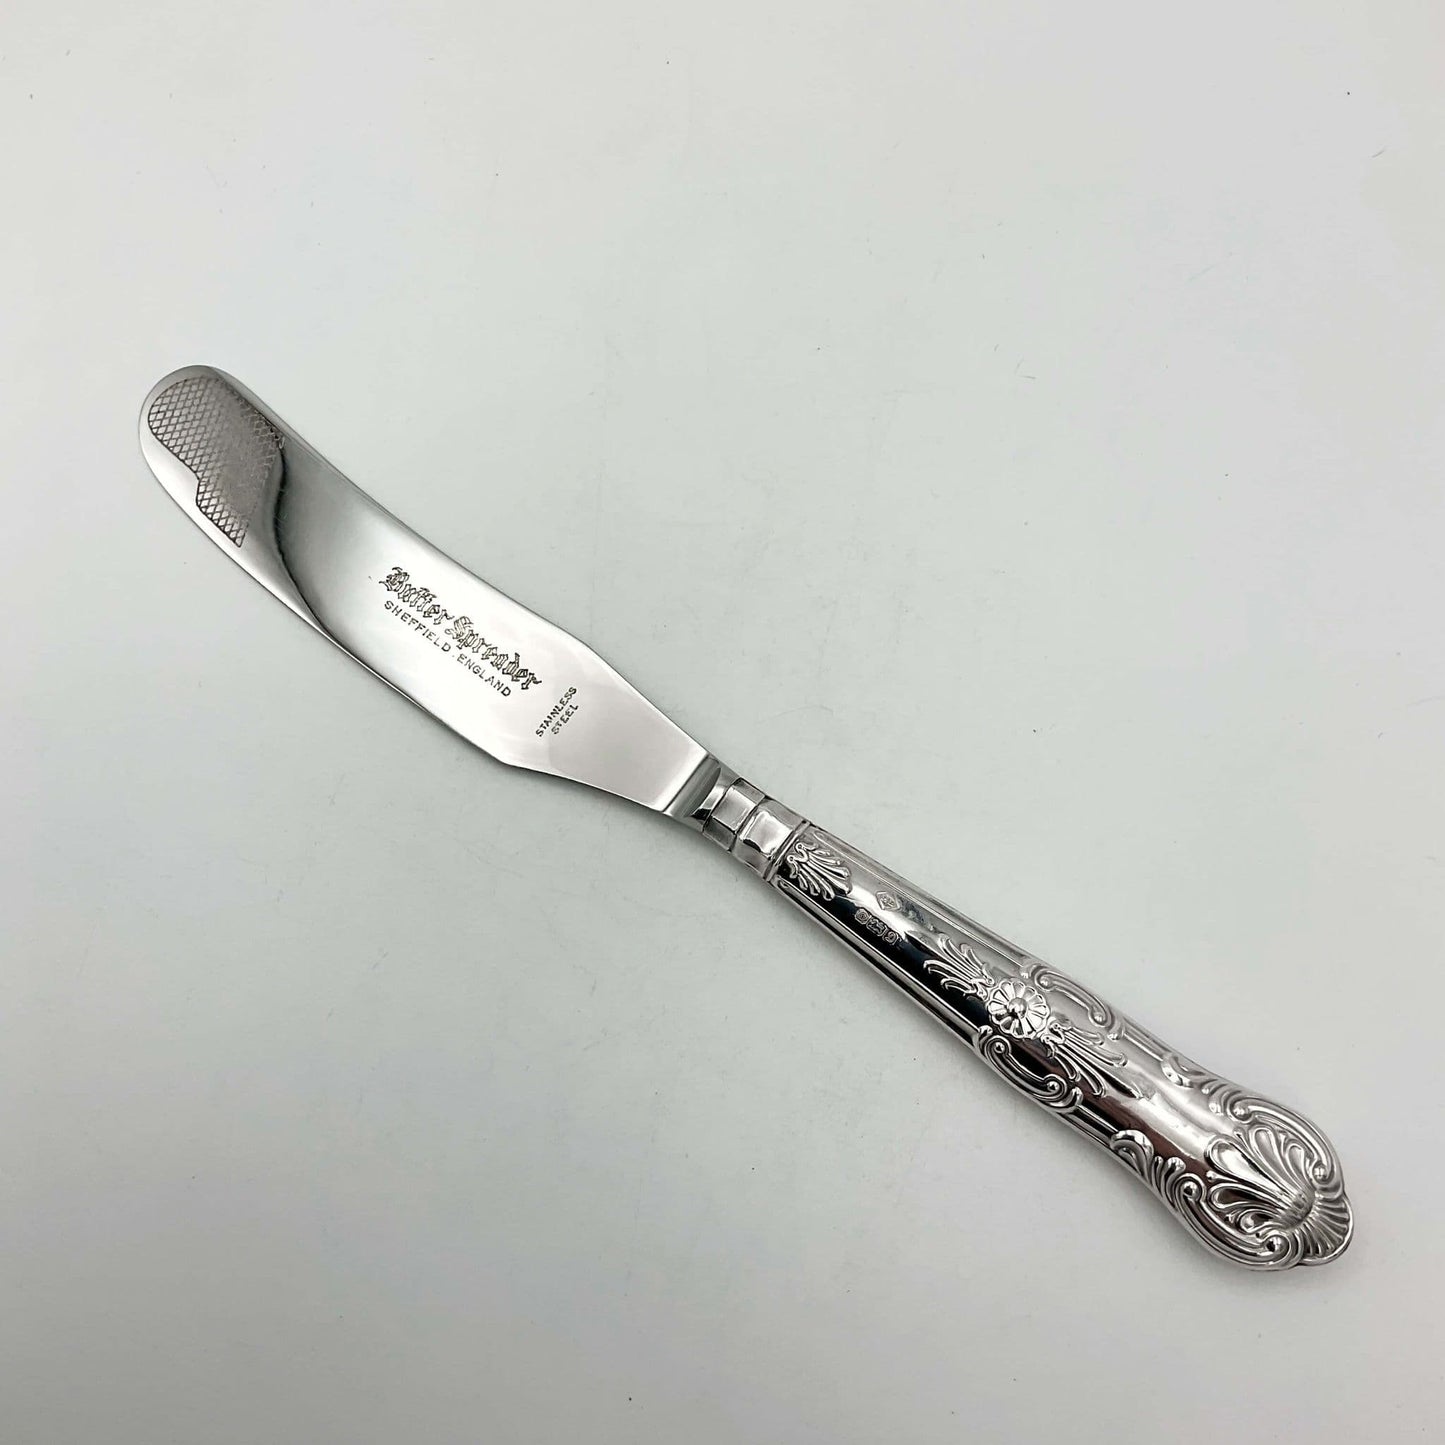 Vintage 1978 Solid Silver Handled Butter Knife, Butter Spreader